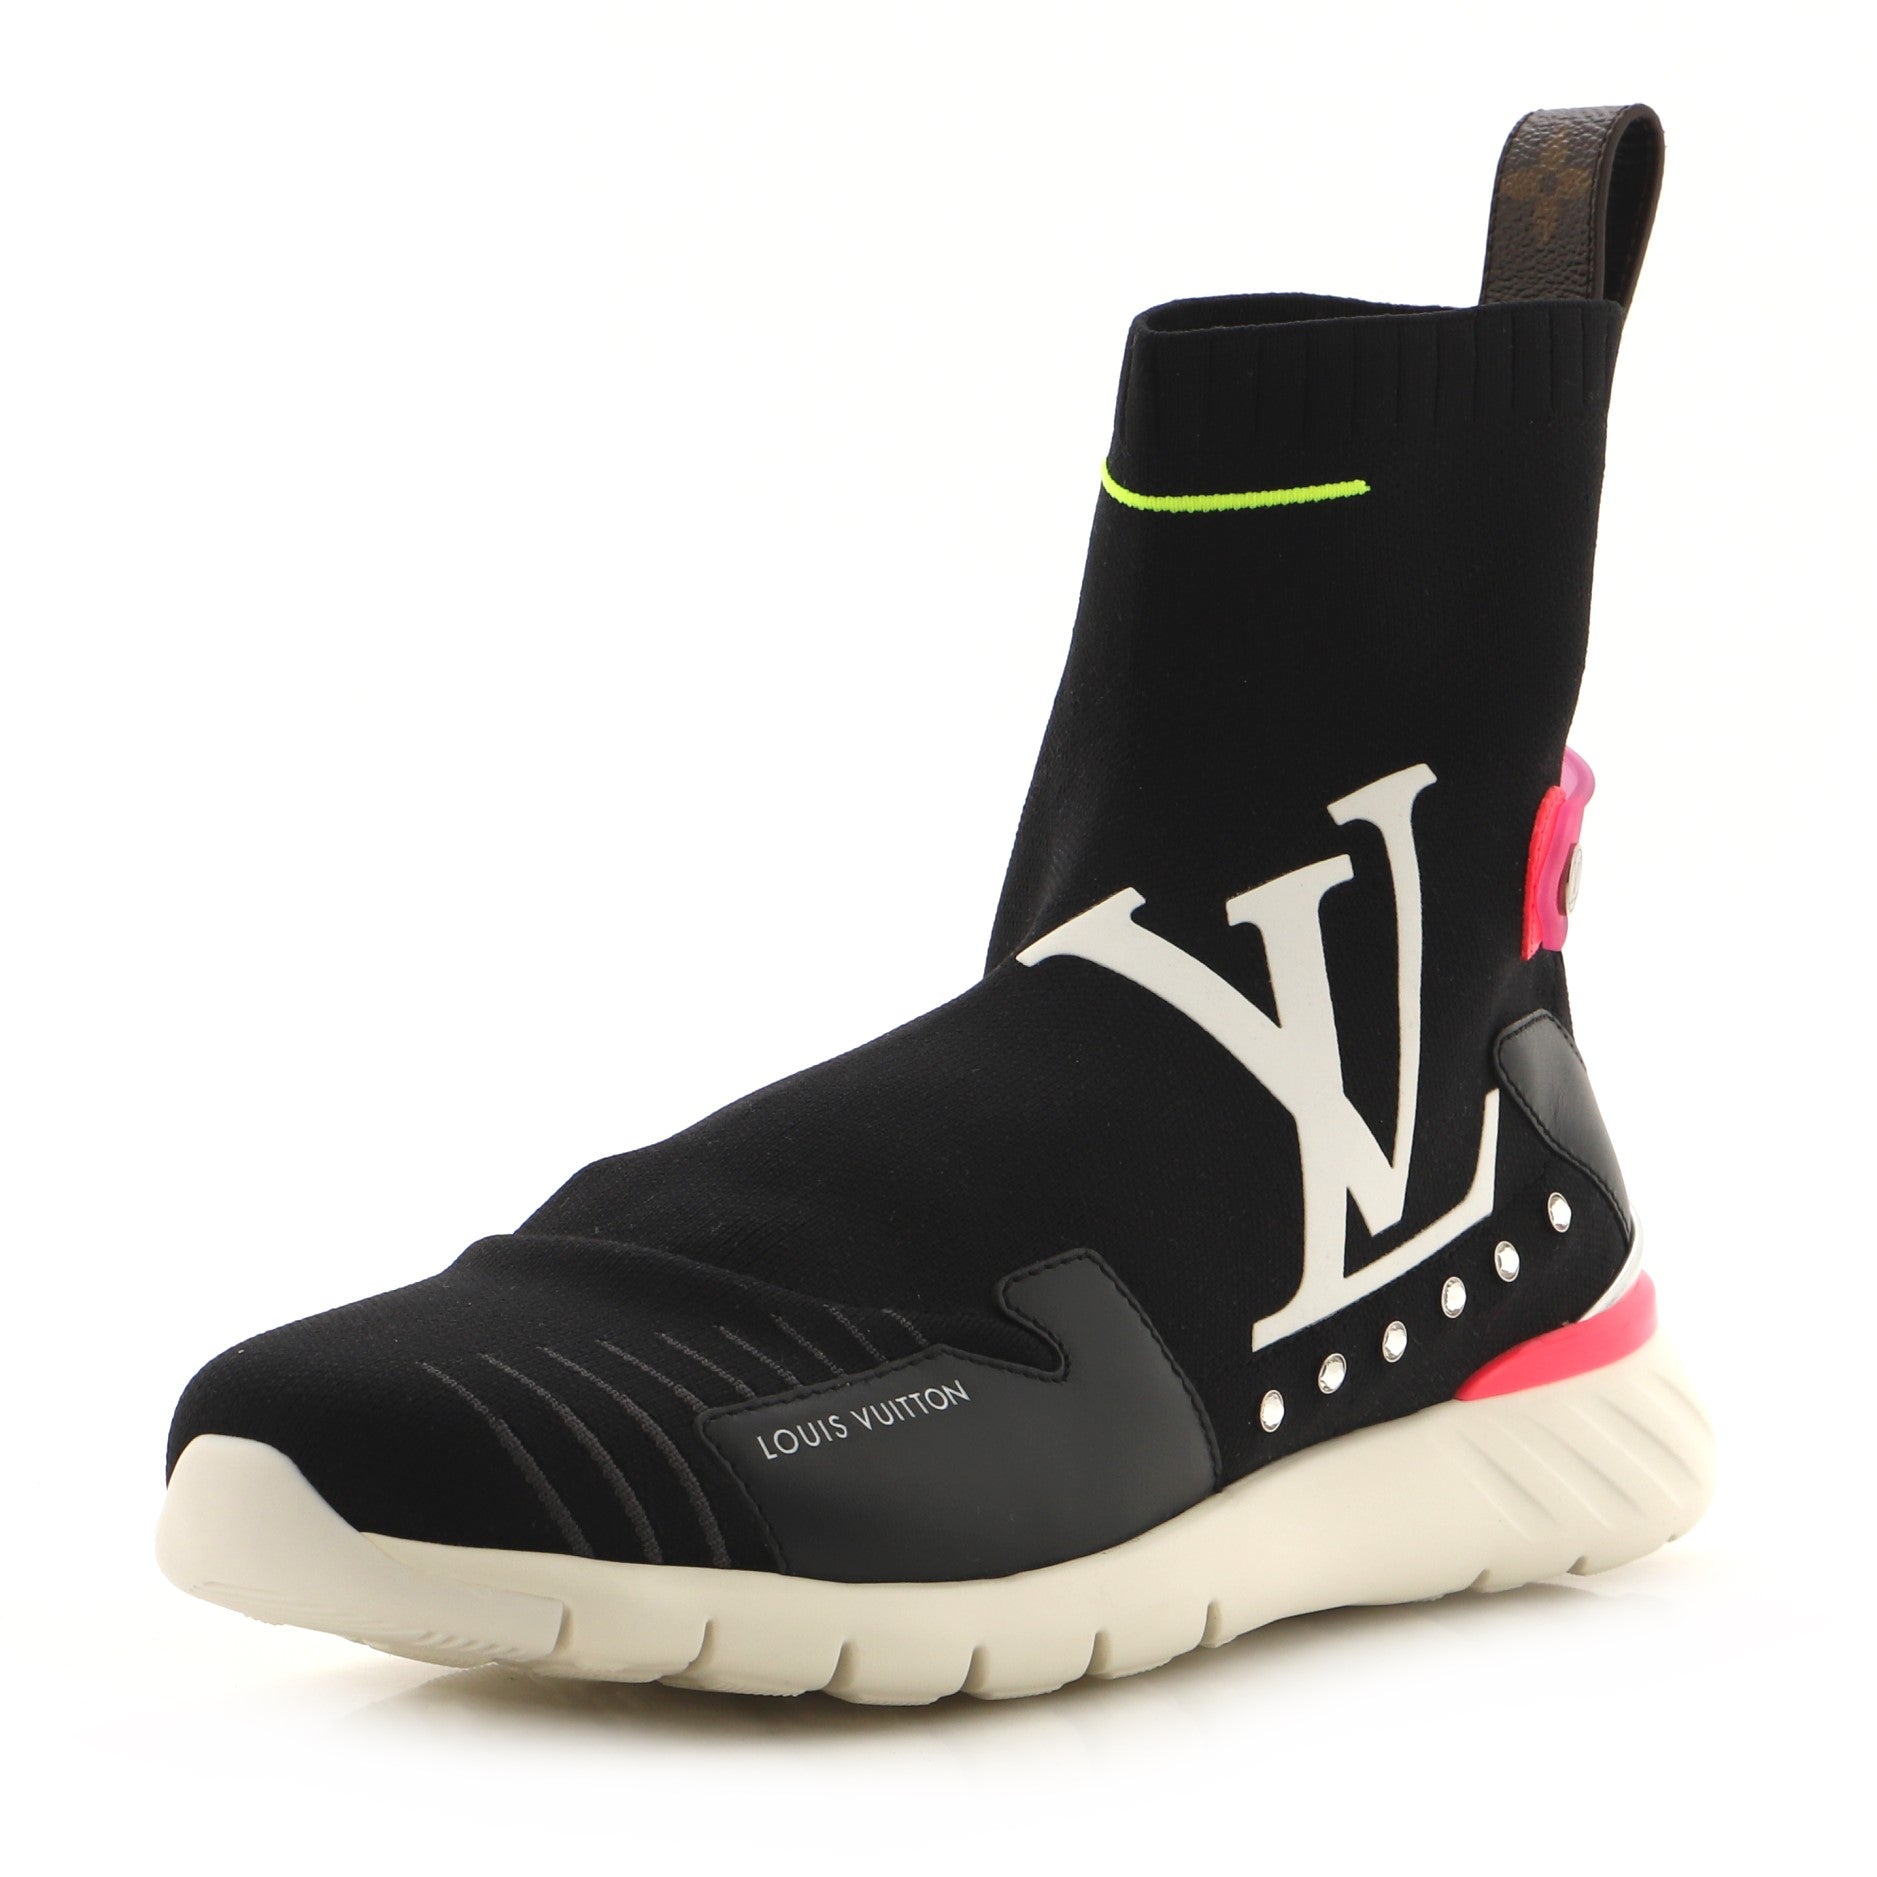 LOUIS VUITTON Stretch Textile Monogram LV Archlight Sneaker Boots